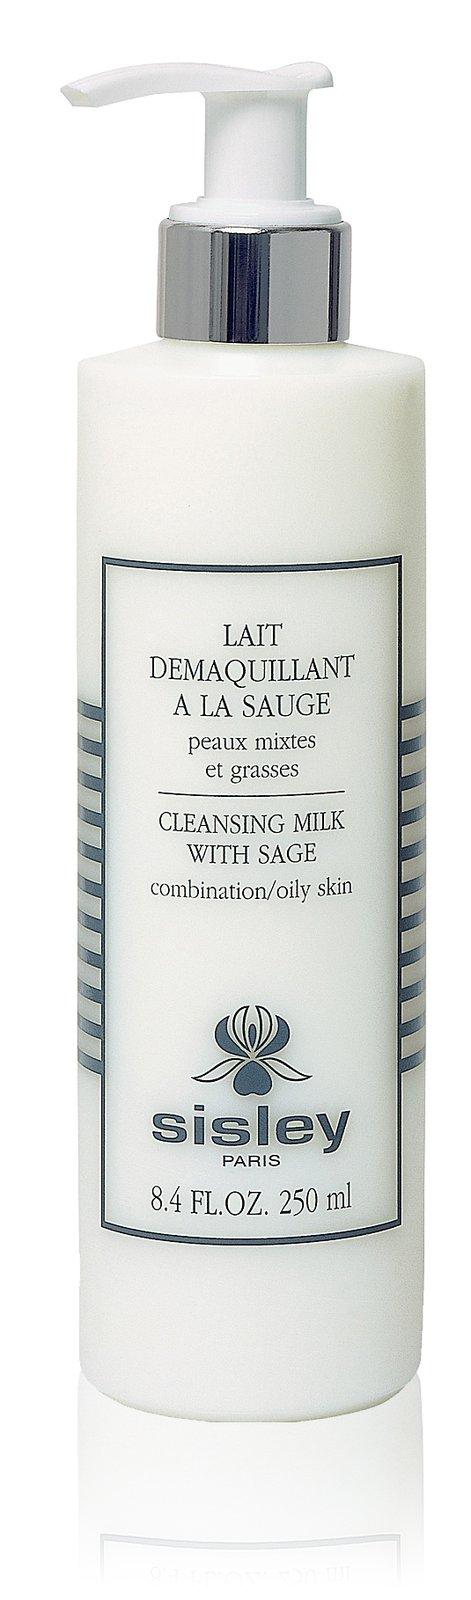 Sisley-paris Cleansing Milk With Sage